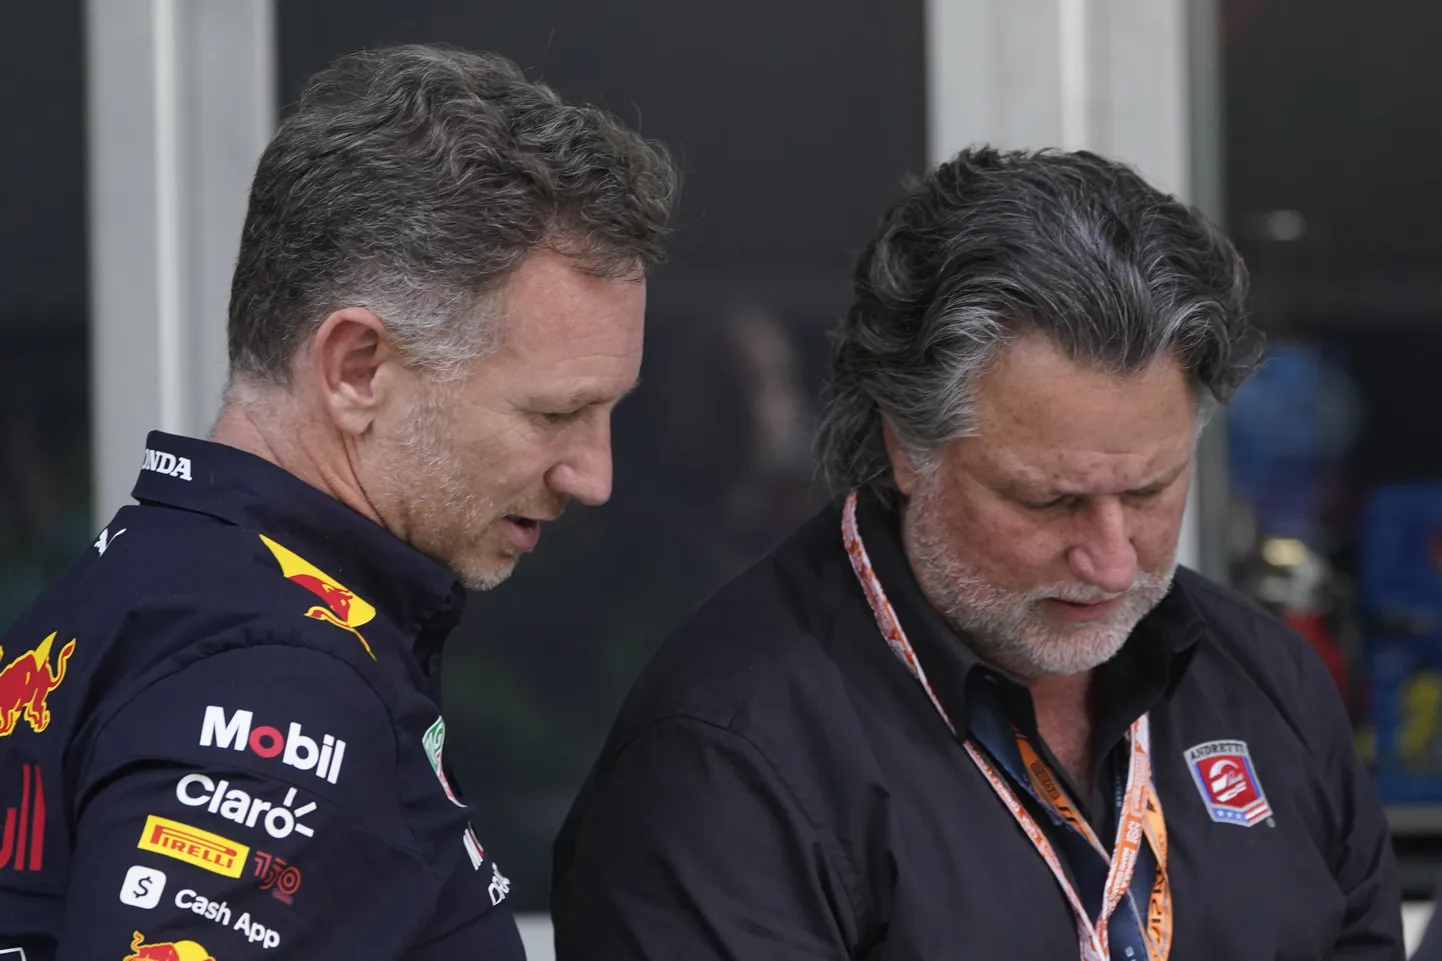 Red Bulli tiimipealik Christian Horner (vasakul) vestlemas Michael Andrettiga, kes püüab omanimelist tiimi vedad F1-sarja, kus see hakkaks ilmselt kasutama Cadillaci kaubamärki.